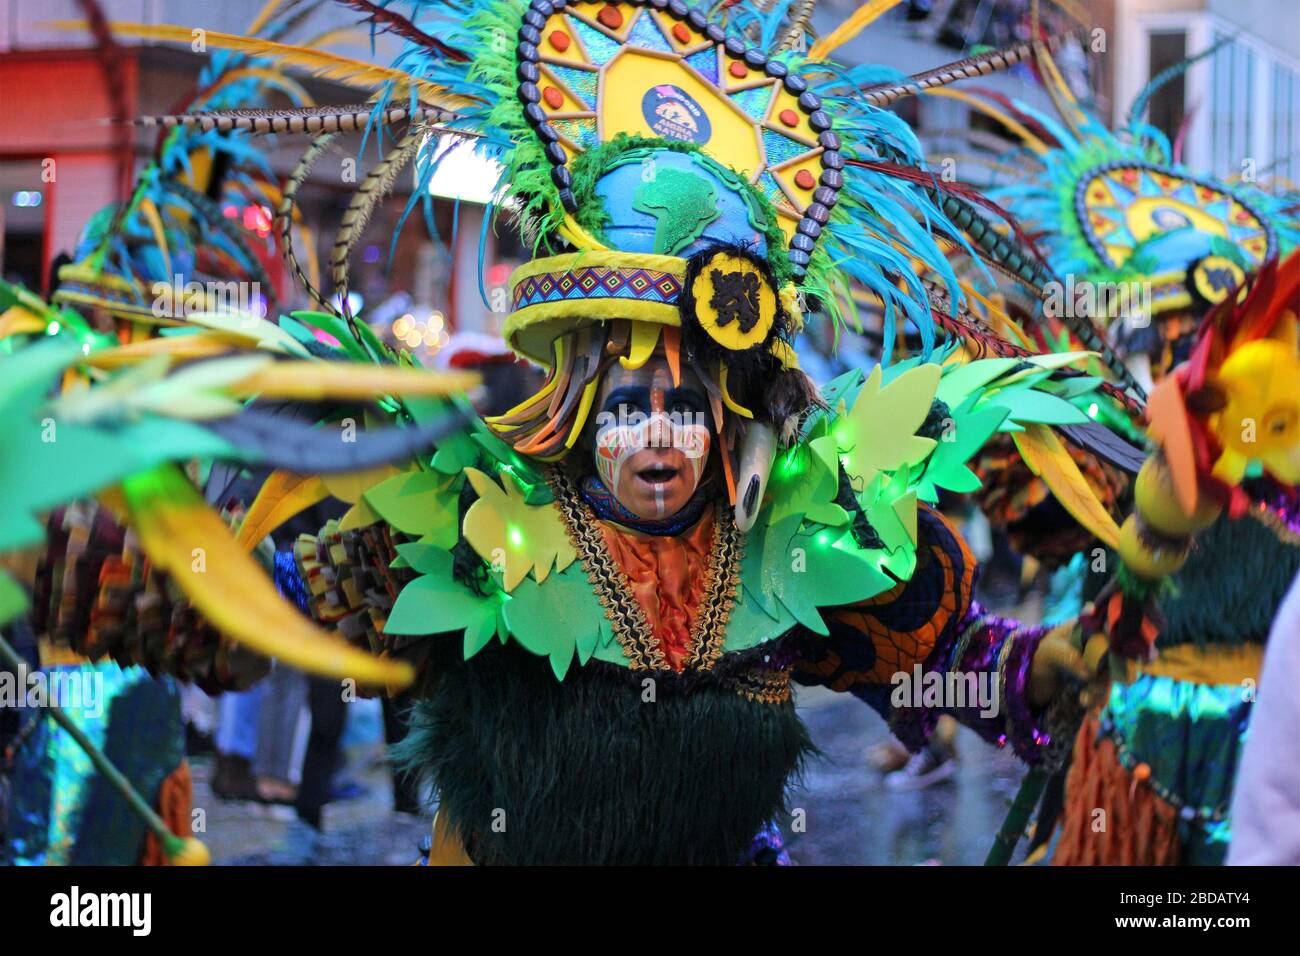 AALST, BELGIEN, 23. FEBRUAR 2020: Unbekannter Karnevalsteilnehmer bei bunten Kostümtänzen im jährlichen Mardi Gras Parade. Stockfoto